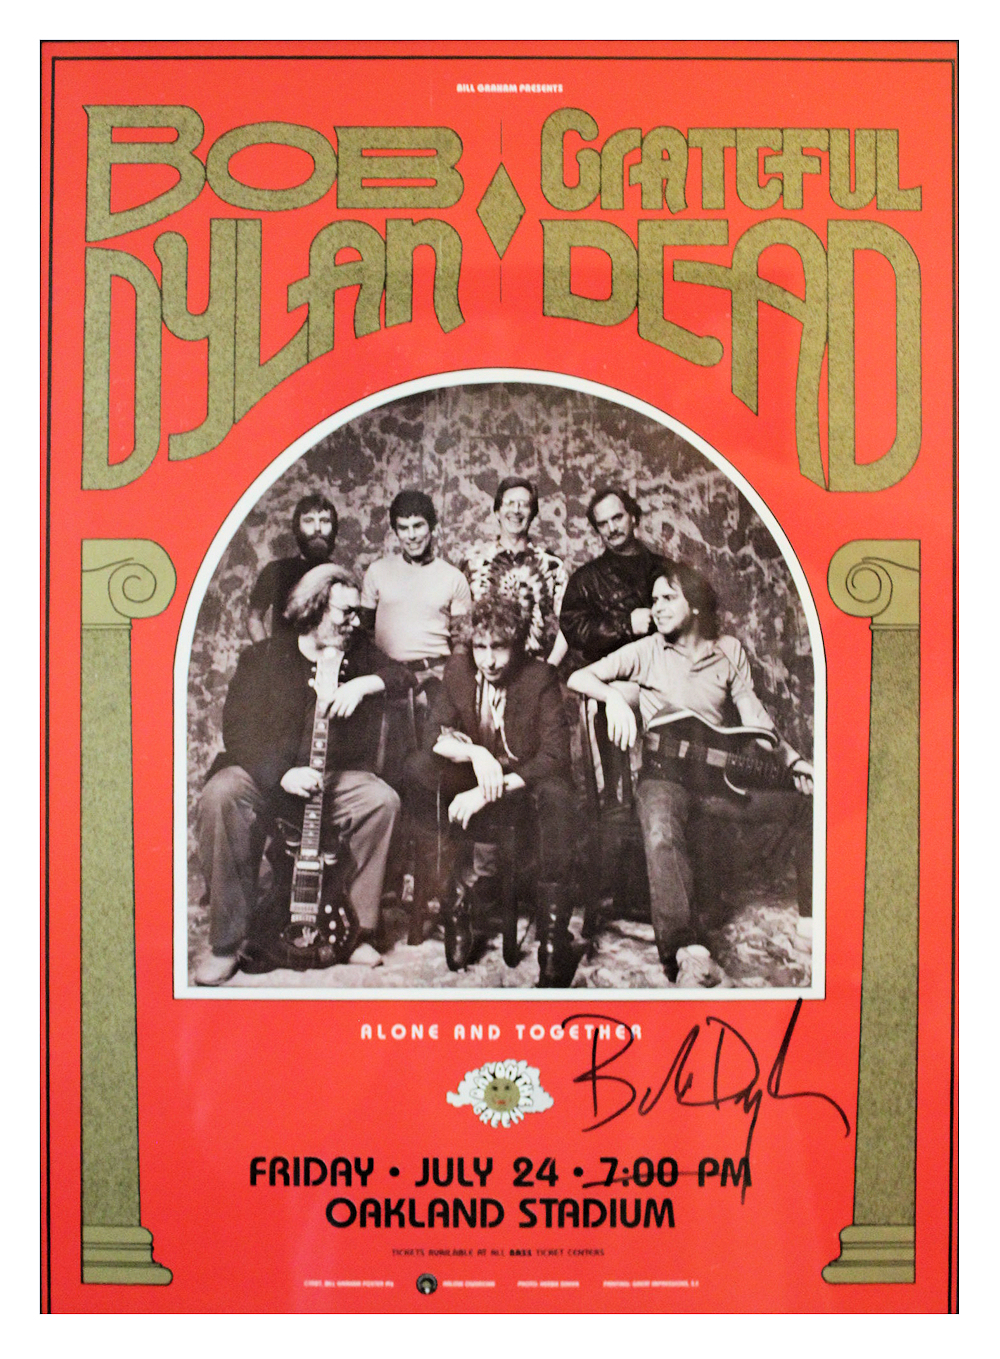 Bob Dylan Bob Dylan Signed Poster